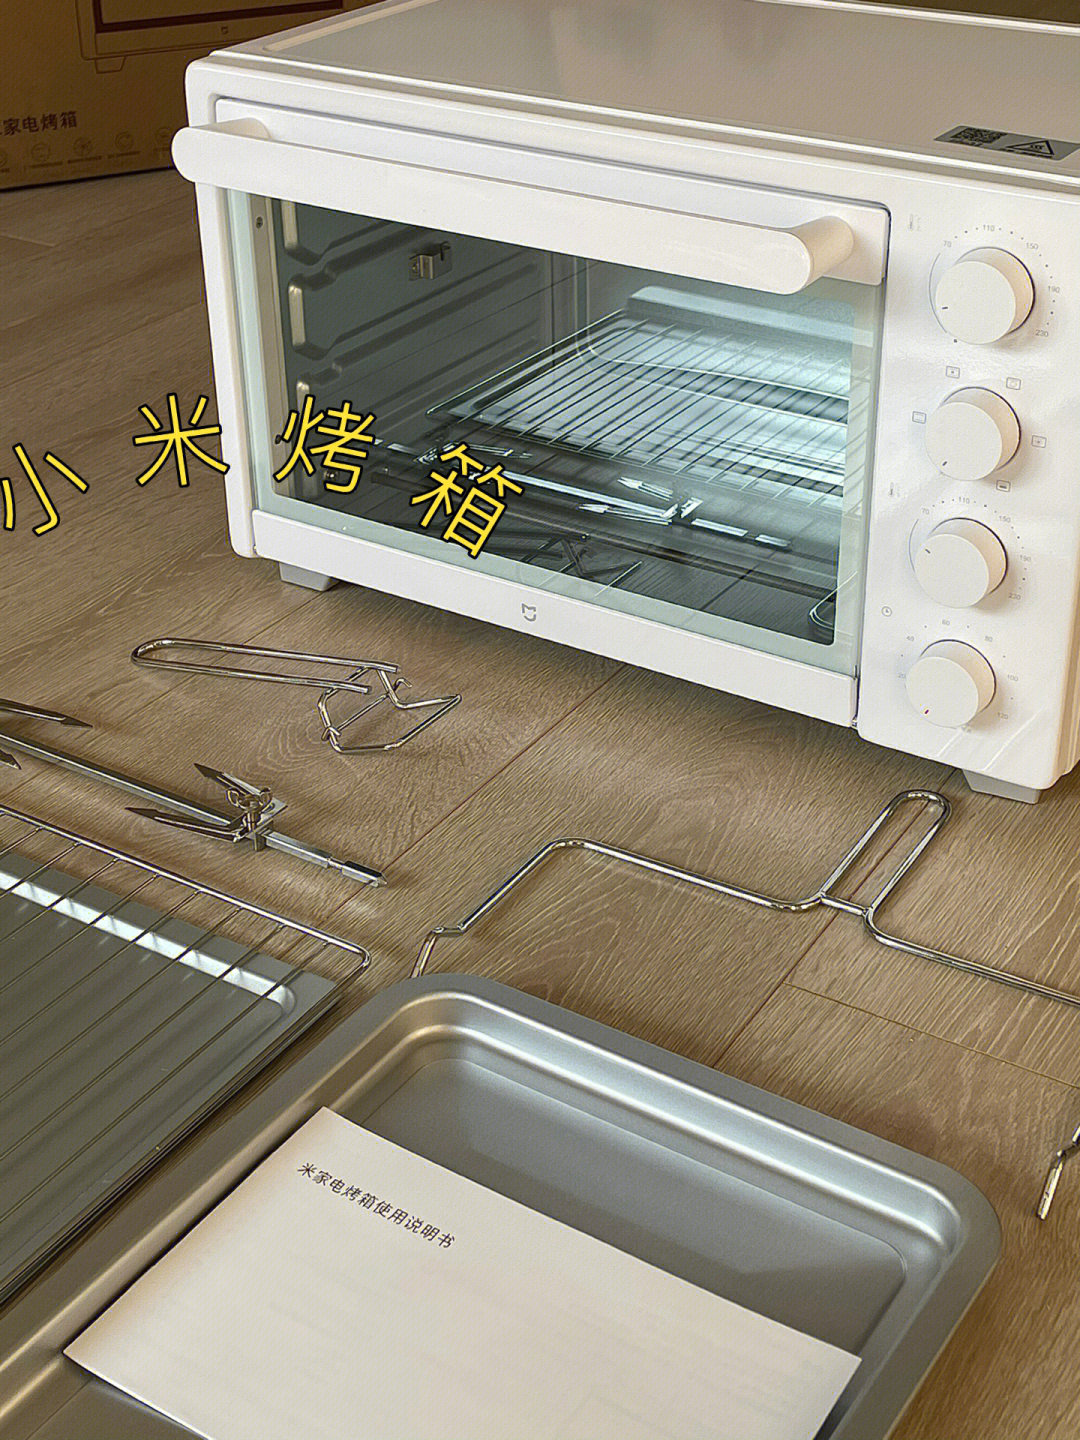 小米烤箱功能图标详解图片